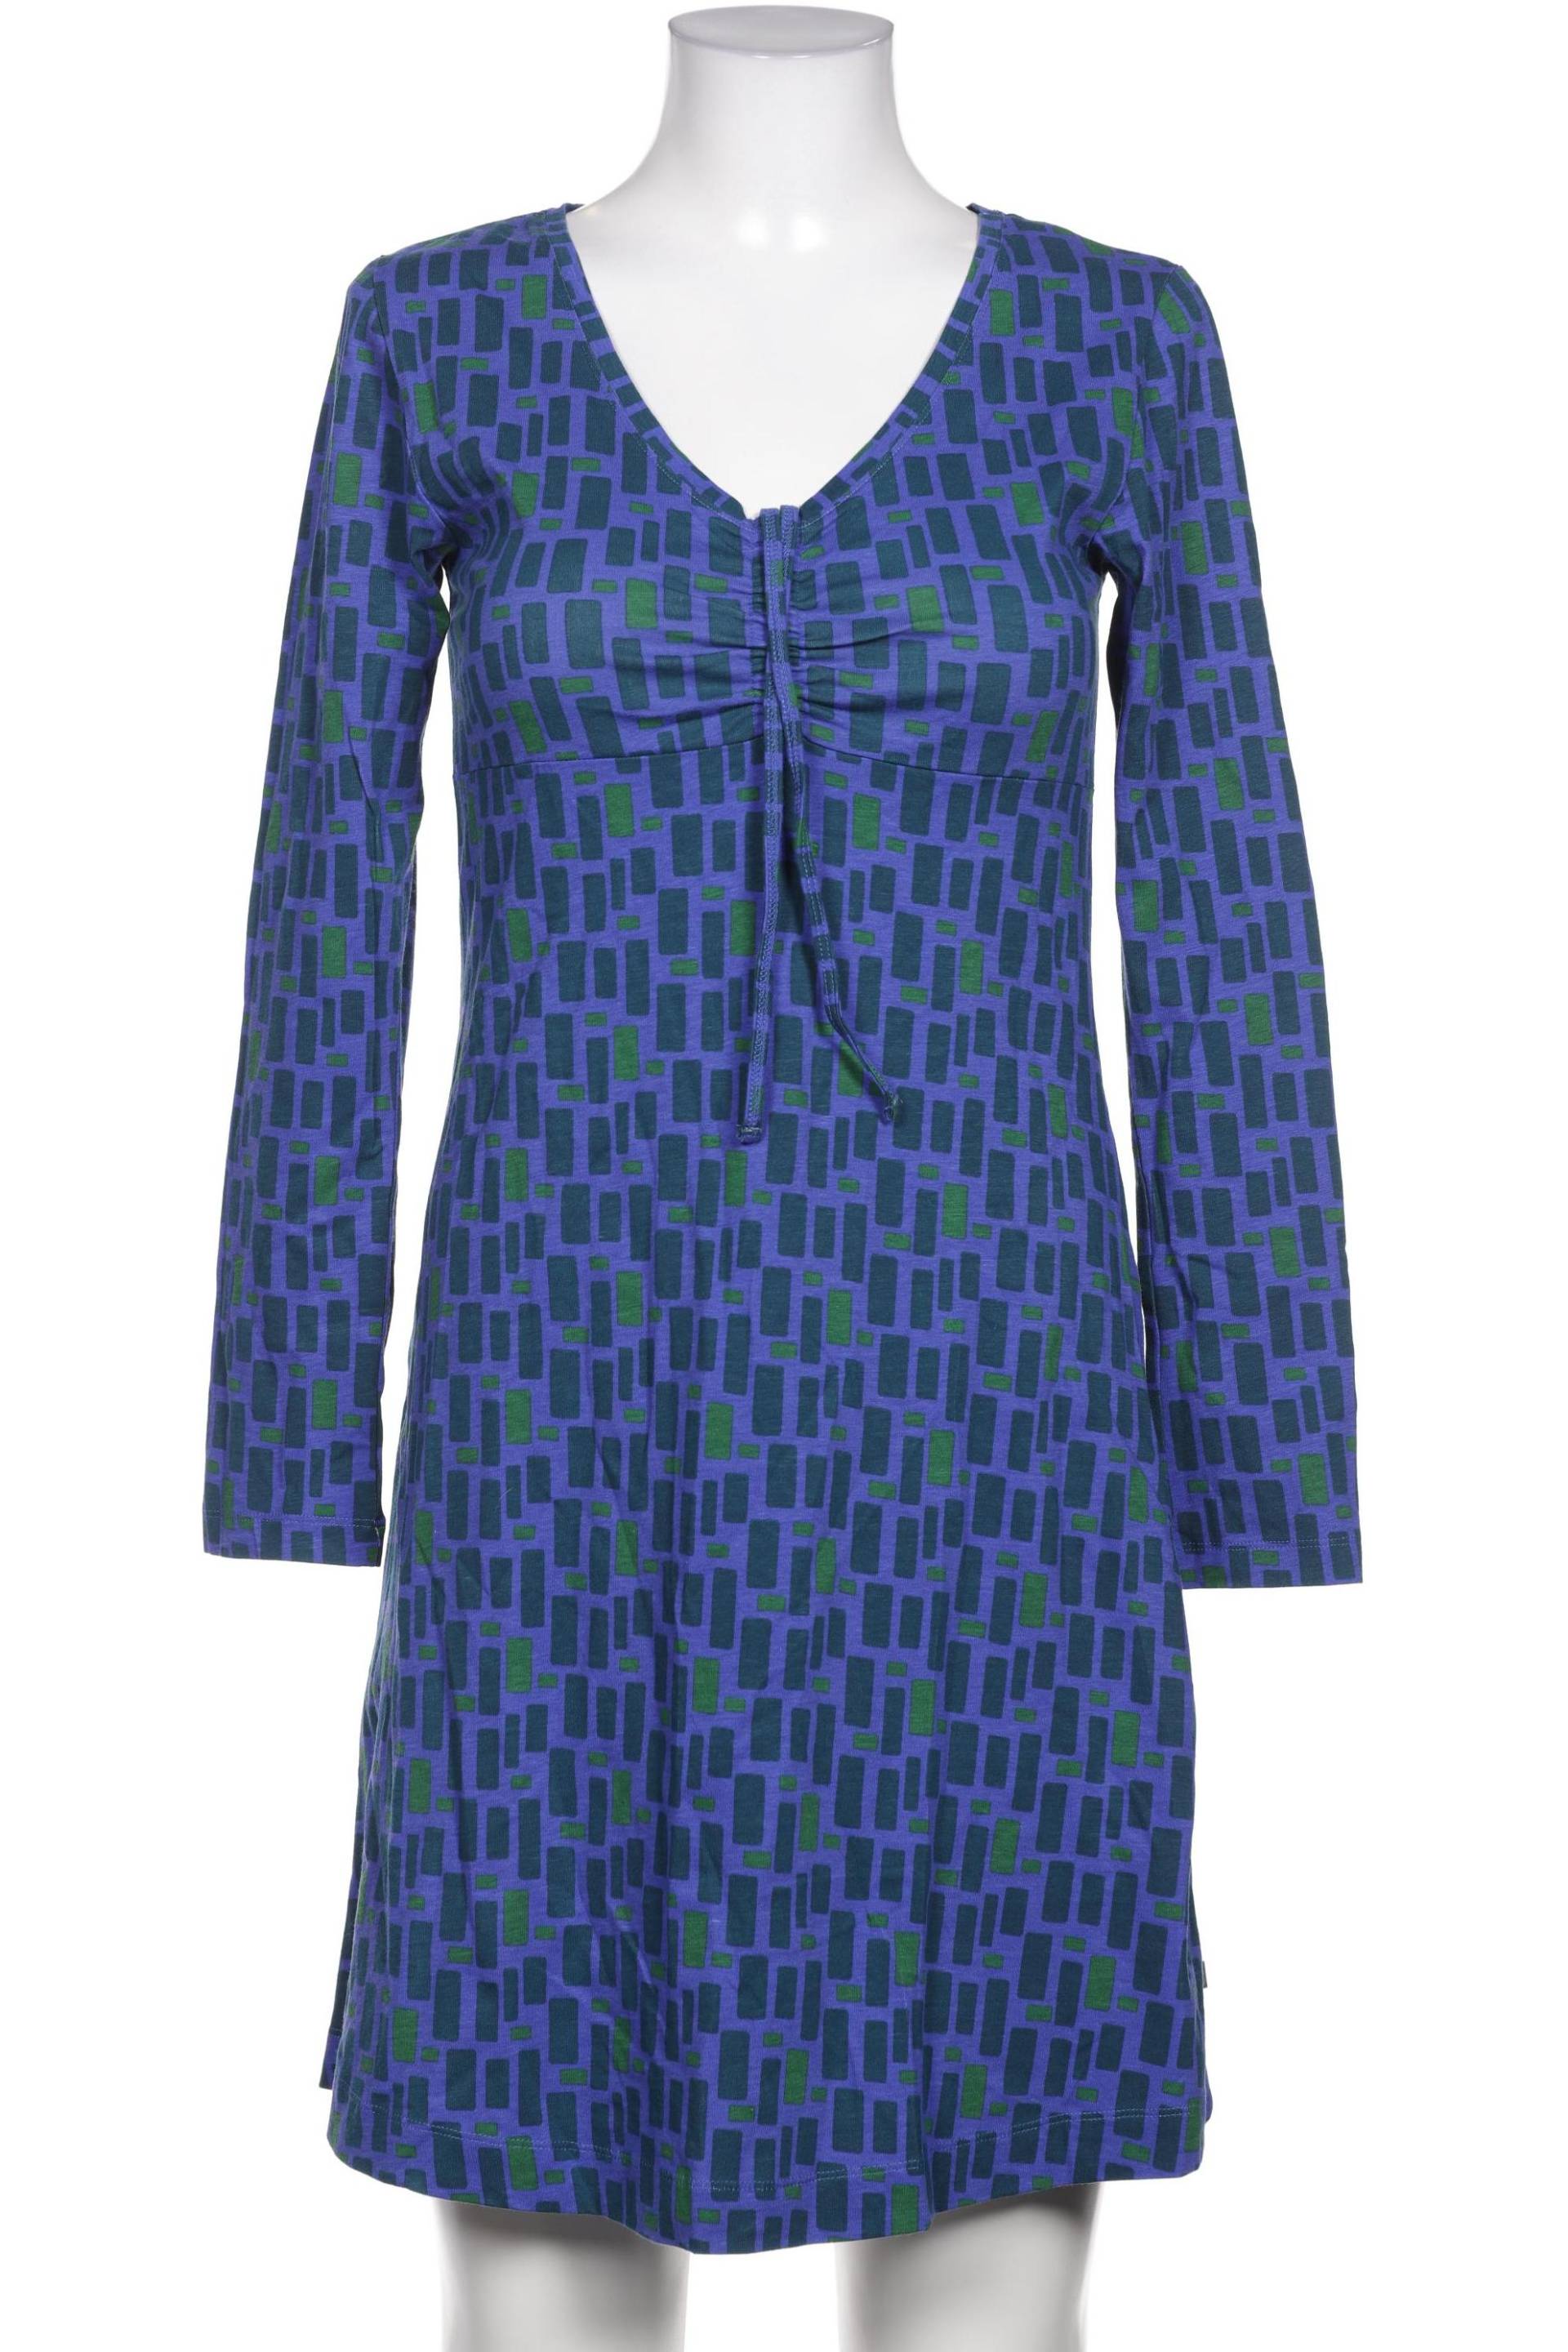 TRANQUILLO Damen Kleid, blau von TRANQUILLO